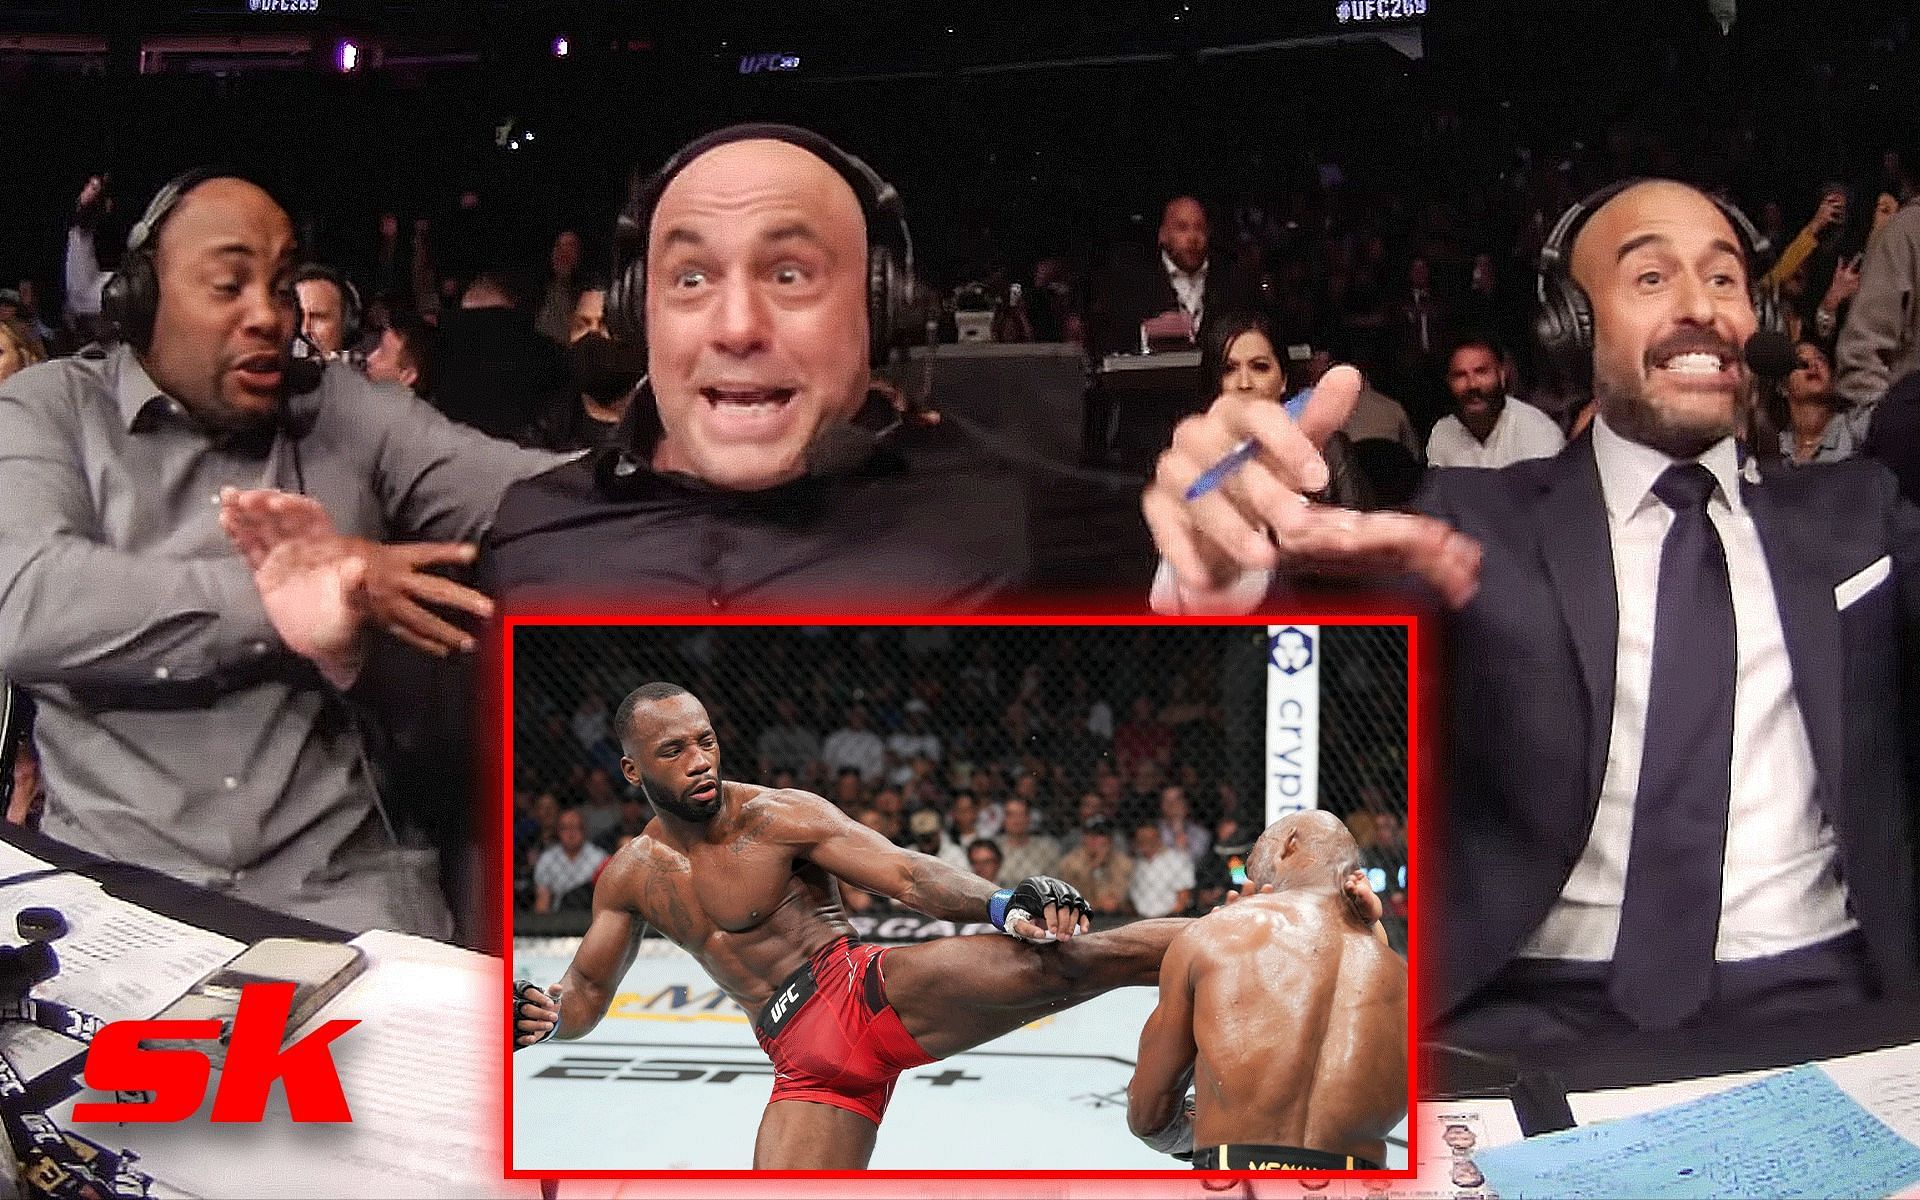 Daniel Cormier, Joe Rogan, and Jon Anik (back) react to Leon Edwards knocking out Kamaru Usman (front). [Images courtesy: back image from YouTube UFC, front image from Twitter @arielhelwani]